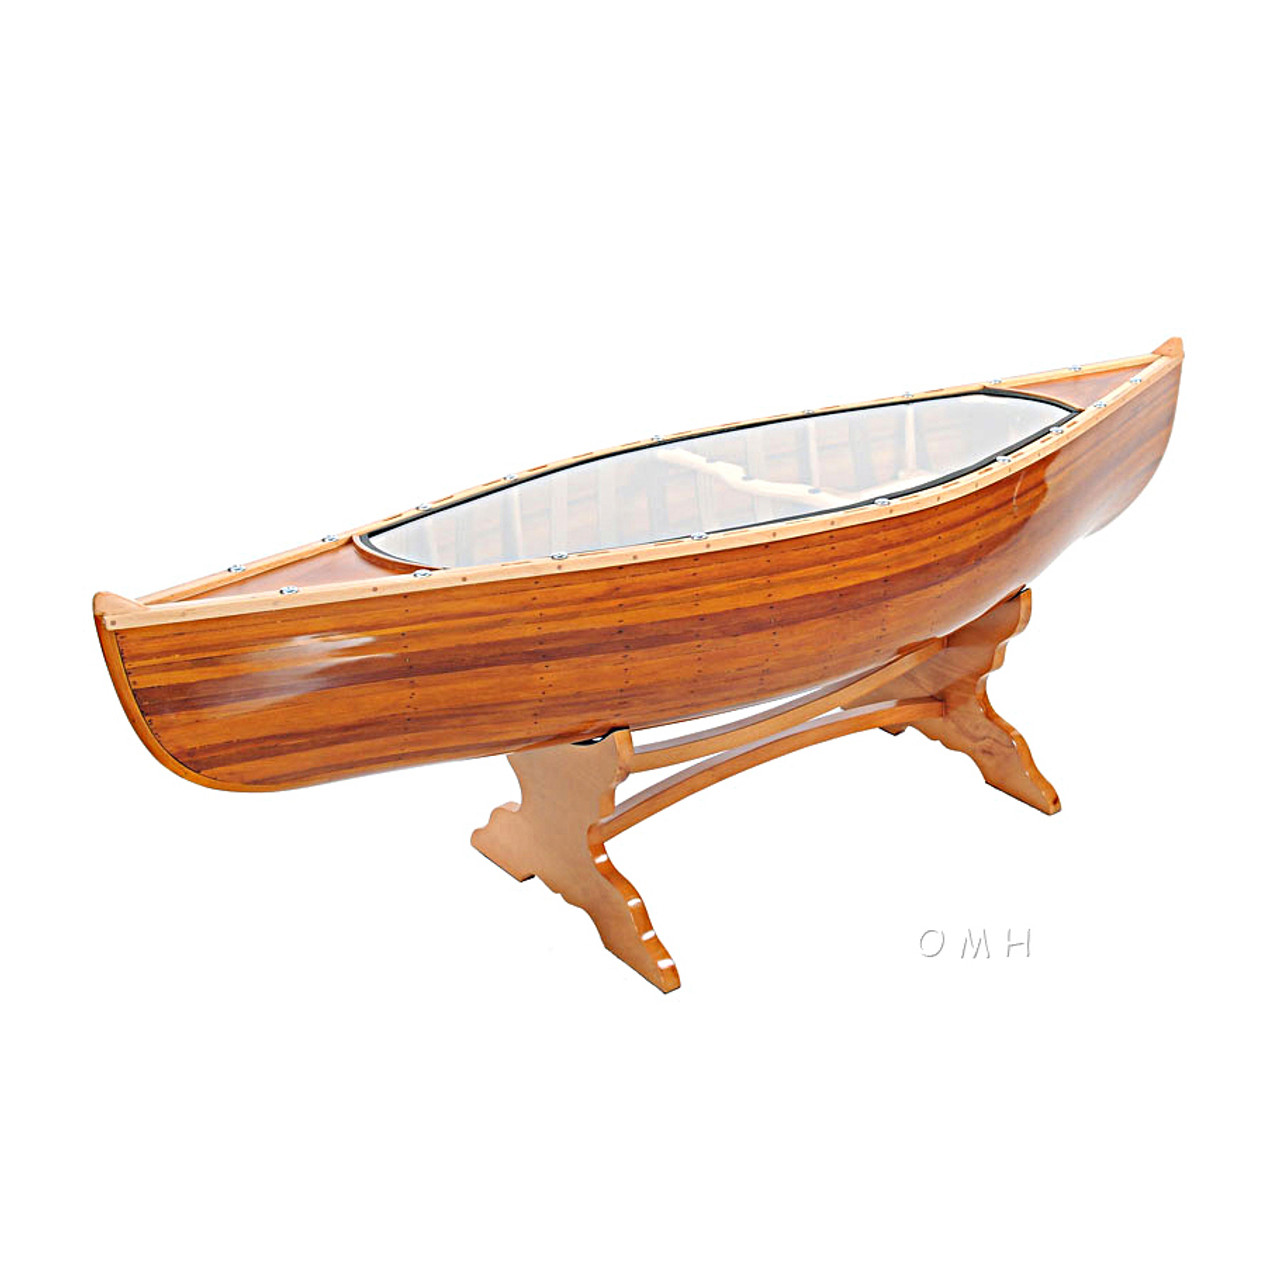 Canoe Coffee Table Glass Top 59" Cedar Wood Strip Built ...